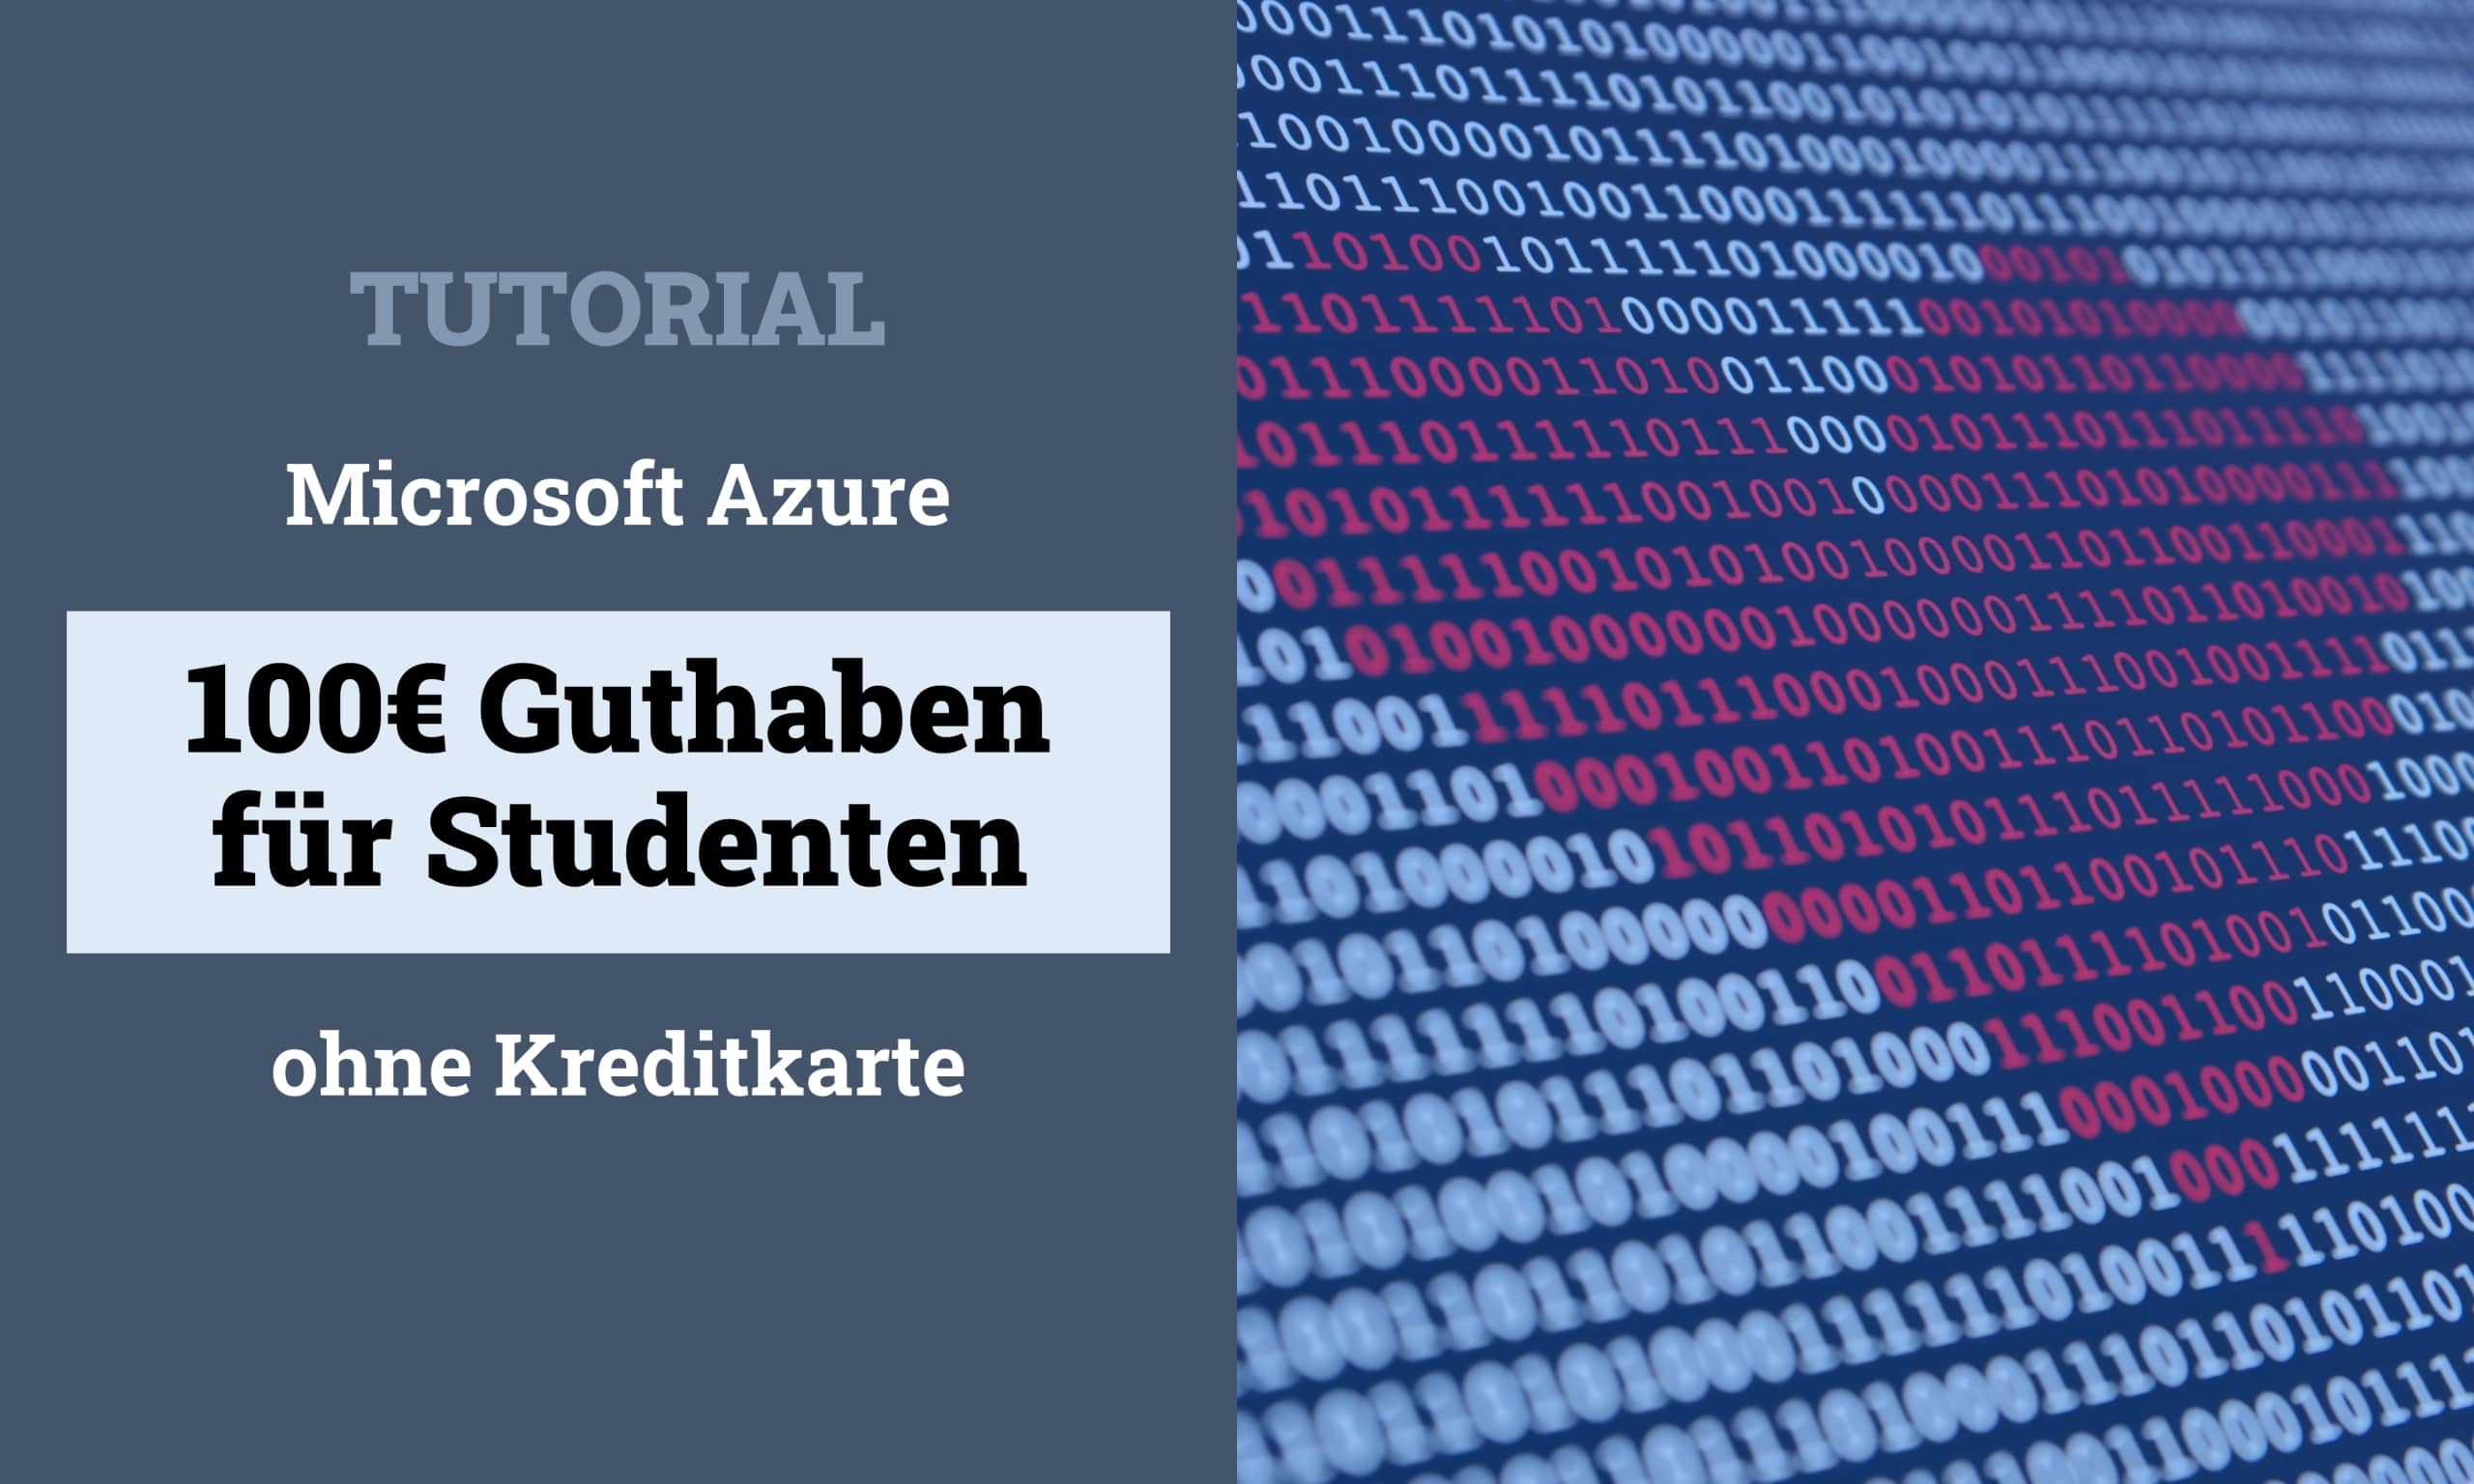 Microsoft Azure for Students Titelbild scaled